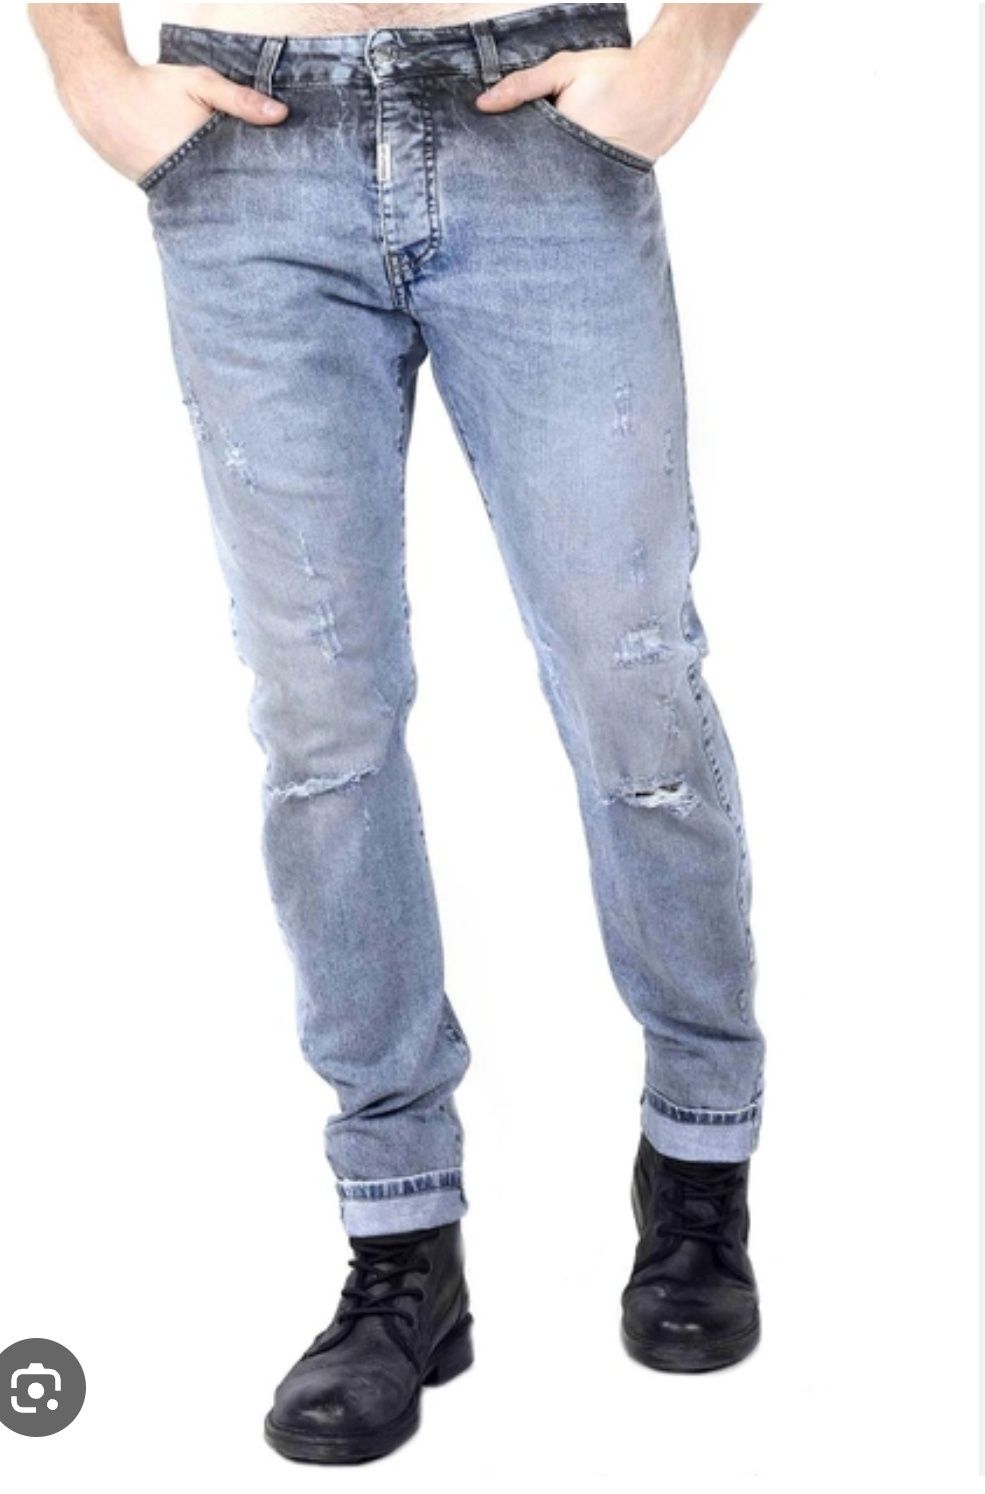 Чоловічі джинси відомої фірми Absolut Joy (Абсолют Джой)